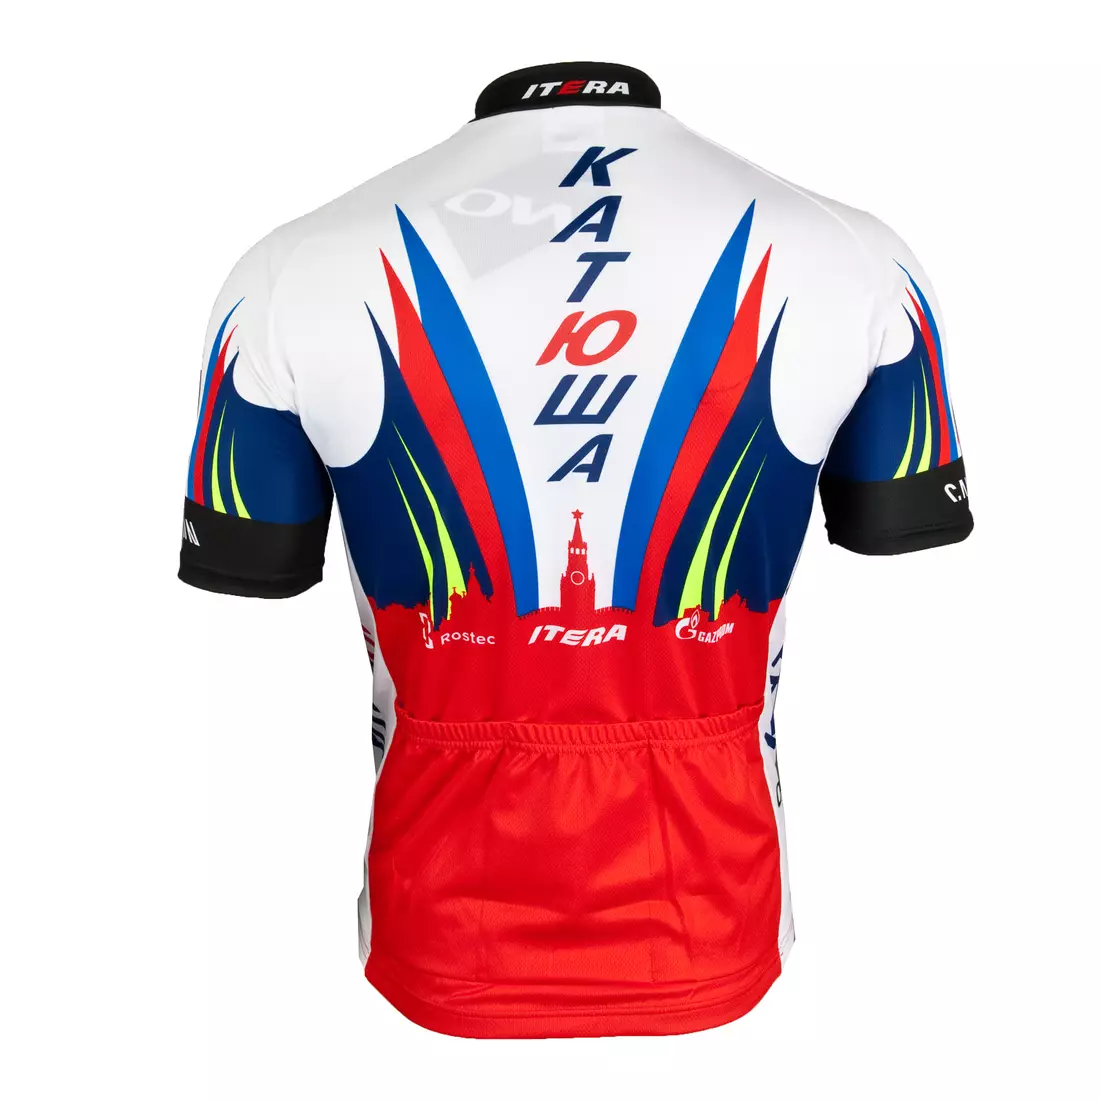 KATUSHA 2015 cycling jersey